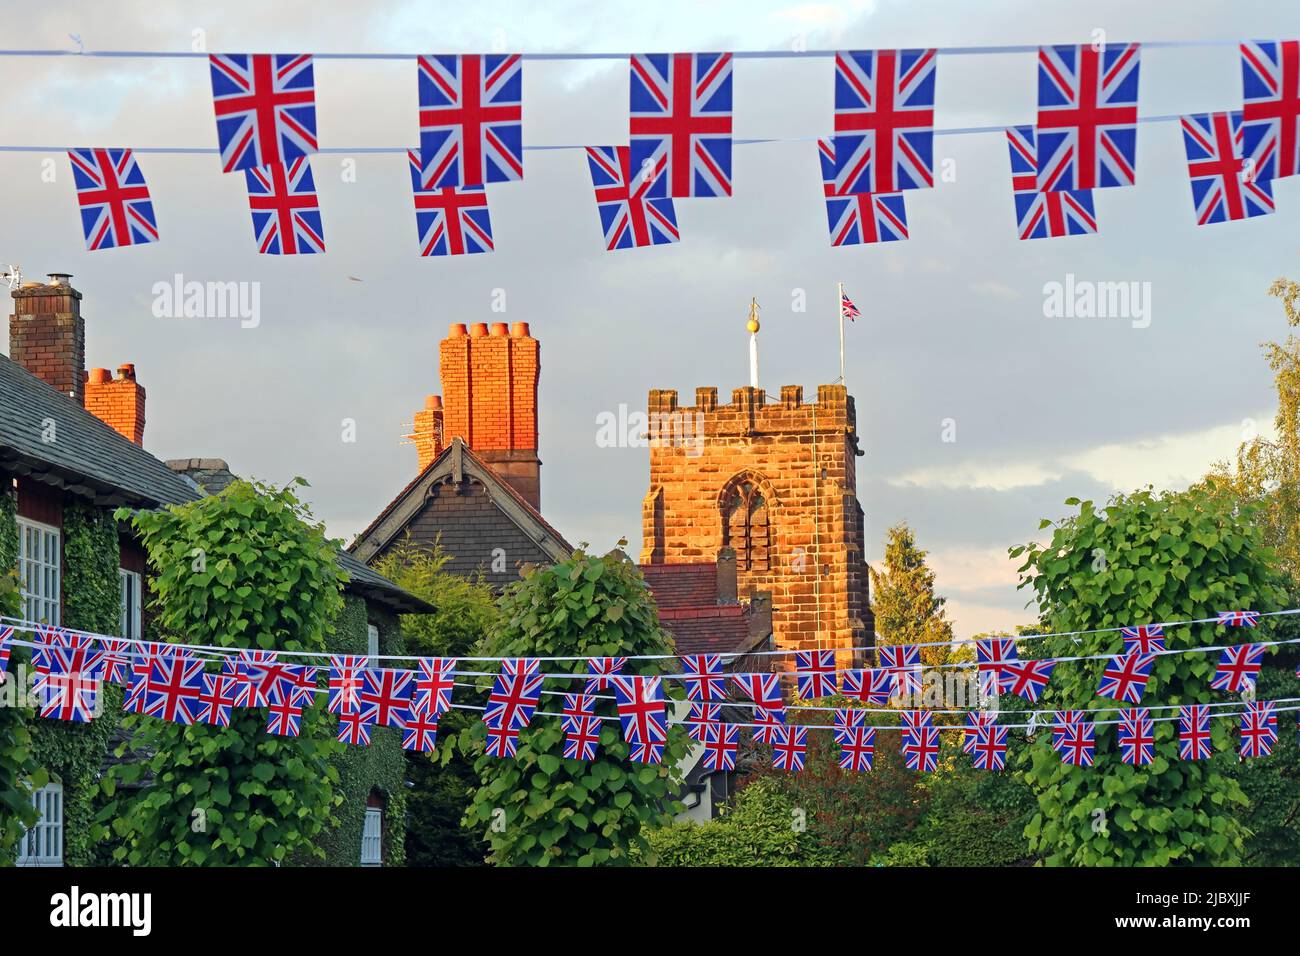 Grande-Bretagne Royaume-Uni drapeau et de l'Union de vol de bunking à Grappenhall Village, Warrington, Cheshire, Angleterre, Royaume-Uni, WA4, pour les célébrations royales Banque D'Images